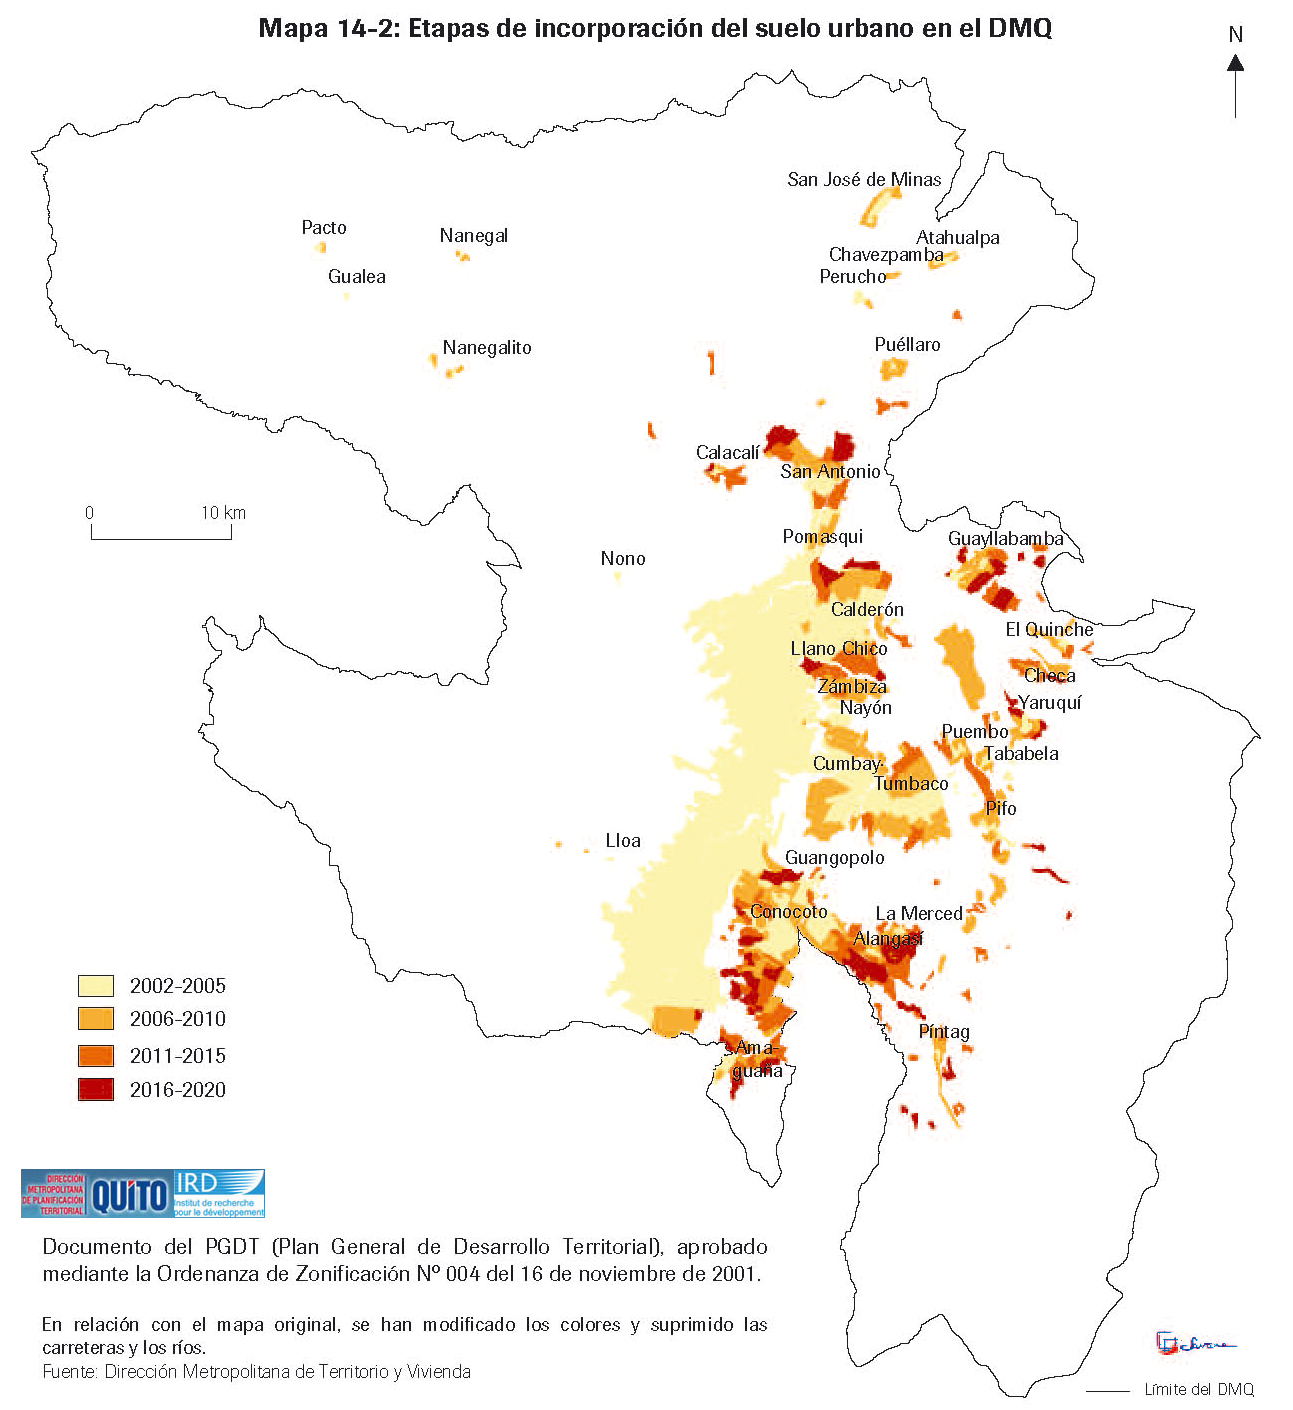 Mapa de Etapas de incorporación del suelo urbano en el Distrito Metropolitano de Quito 2003